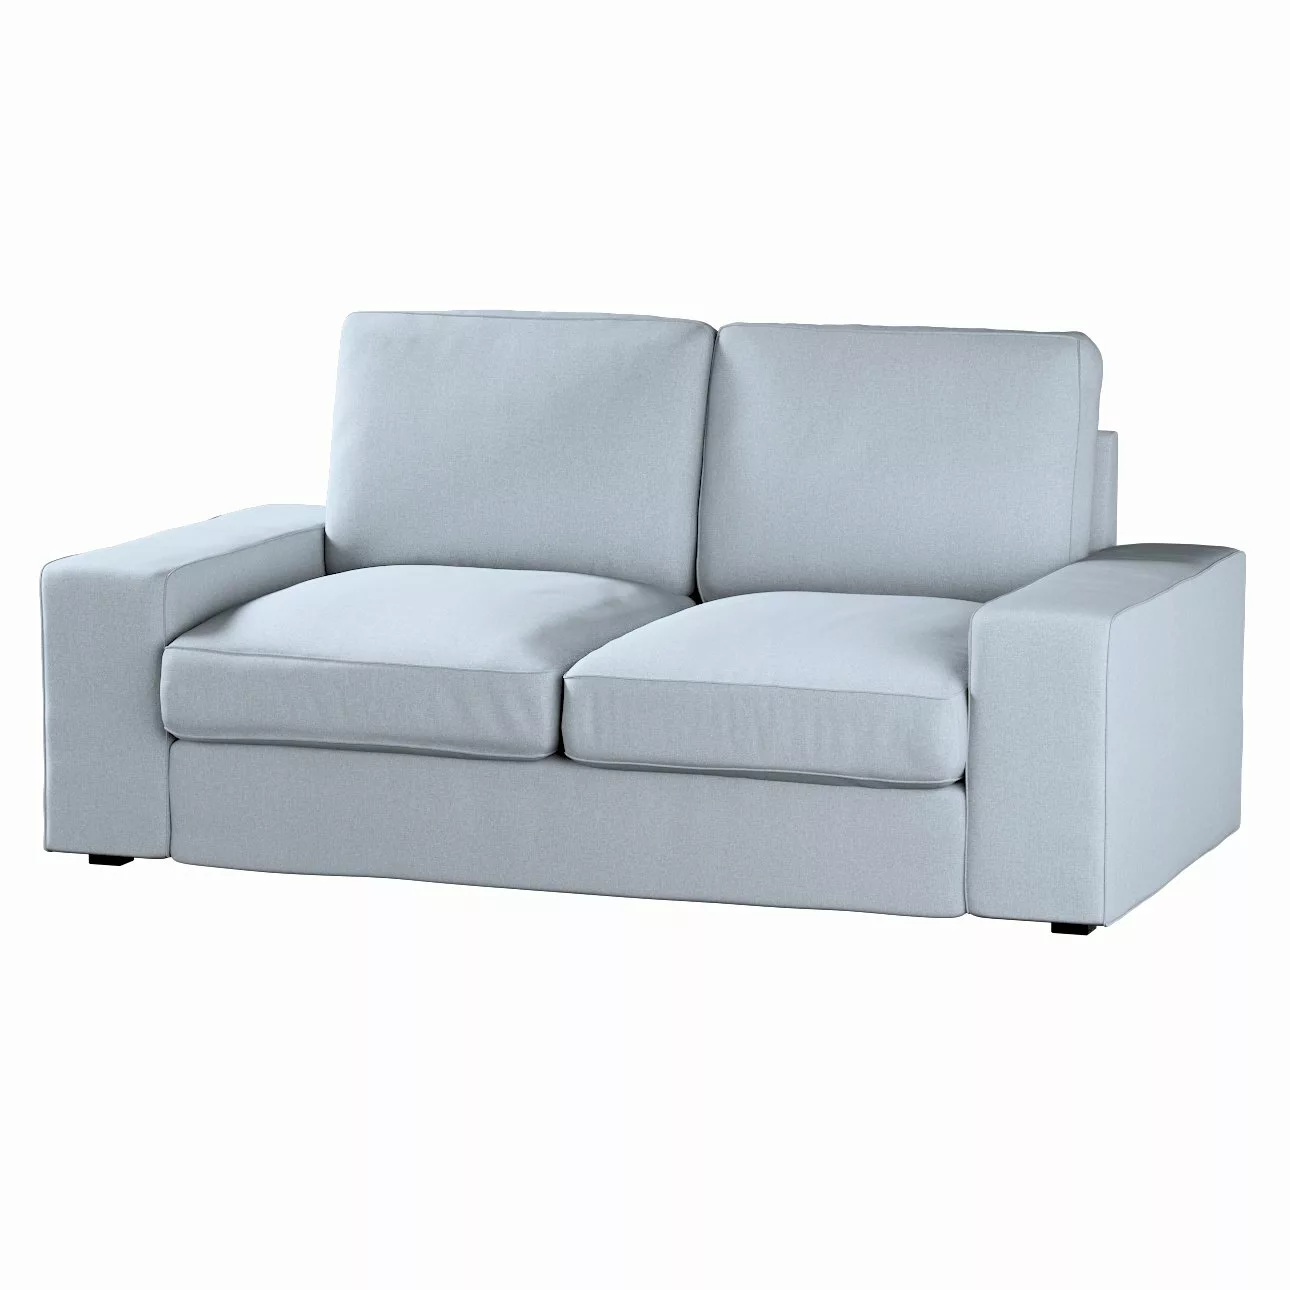 Bezug für Kivik 2-Sitzer Sofa, steingrau, Bezug für Sofa Kivik 2-Sitzer, Am günstig online kaufen